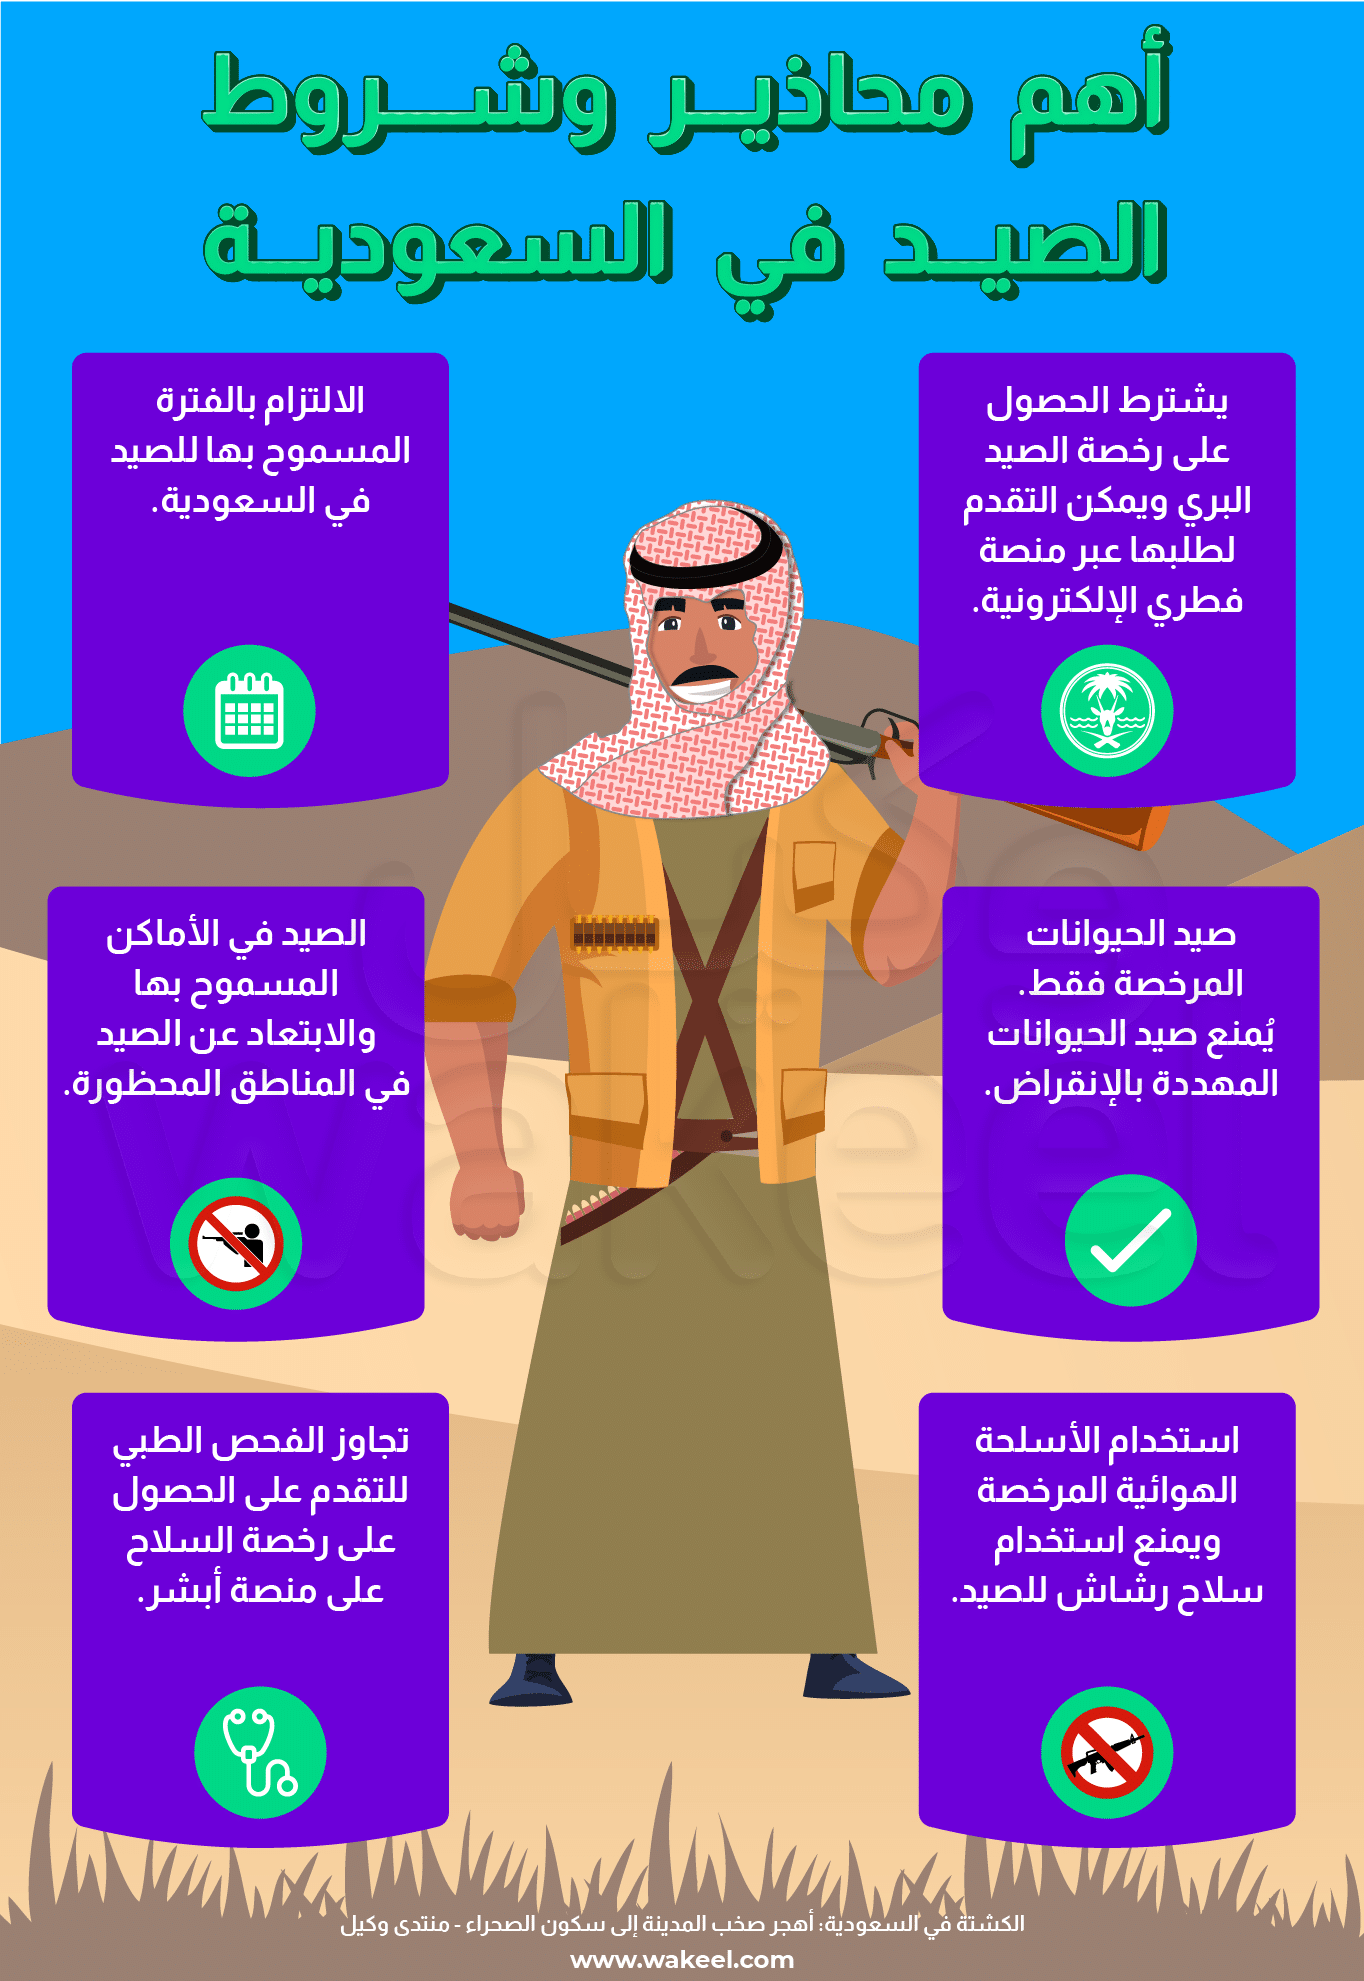 قائمة شروط الذهاب للصيد في المملكة العربية السعودية.